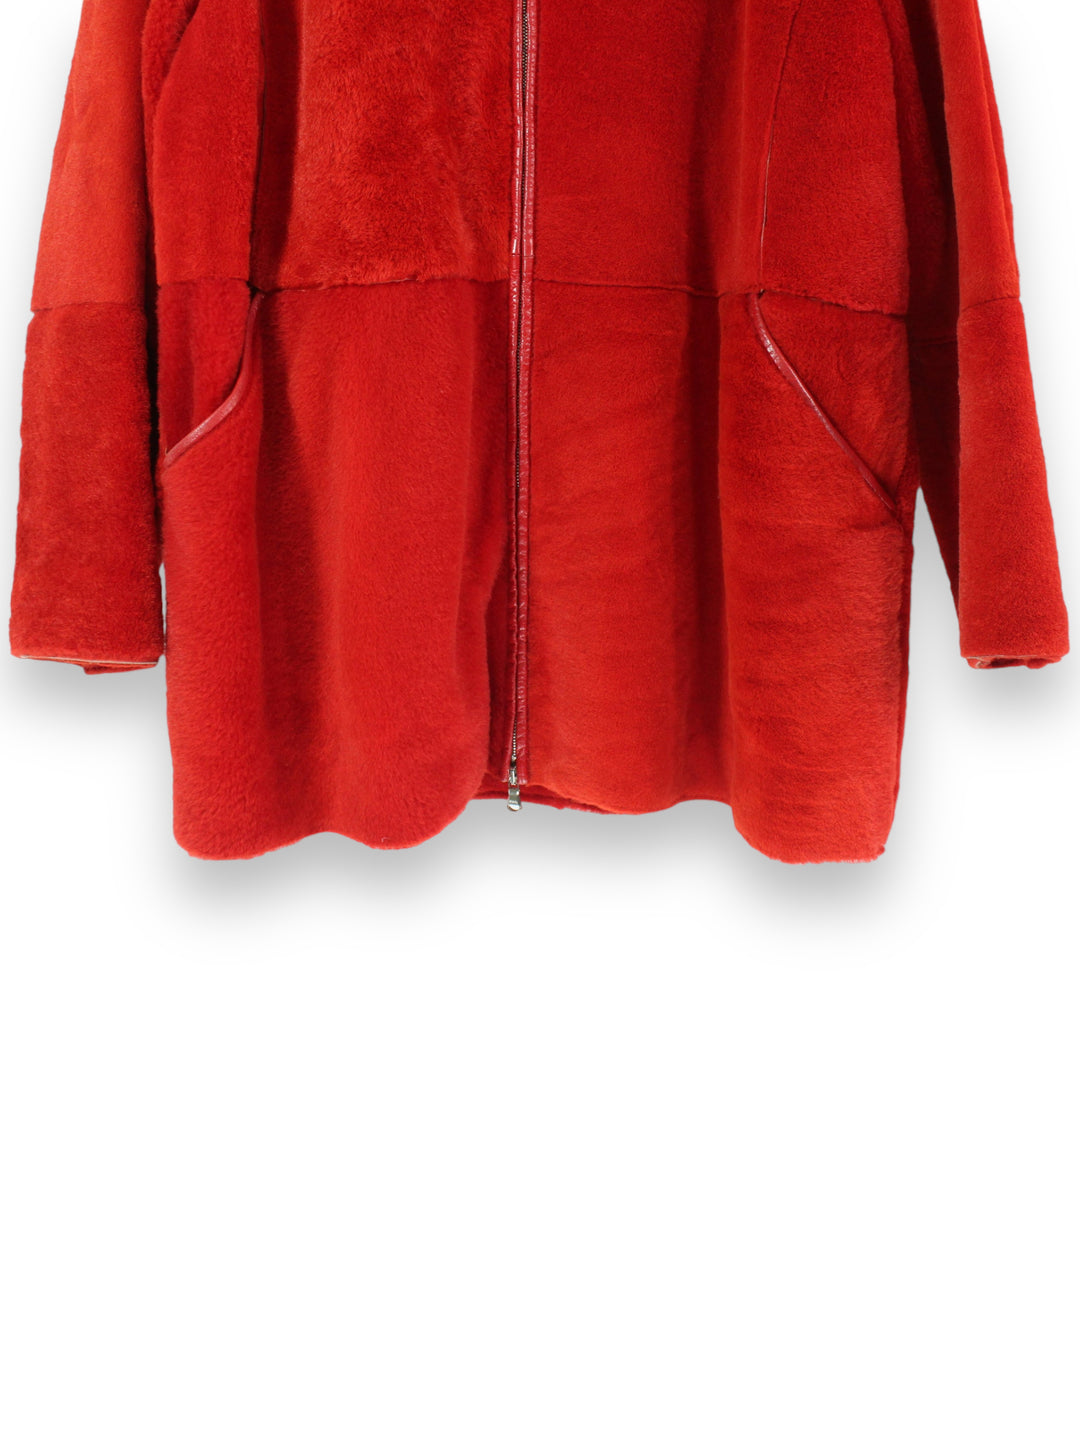 Vintage Hoodied Faux Fur Coat w/ Leather Details Women's M/L